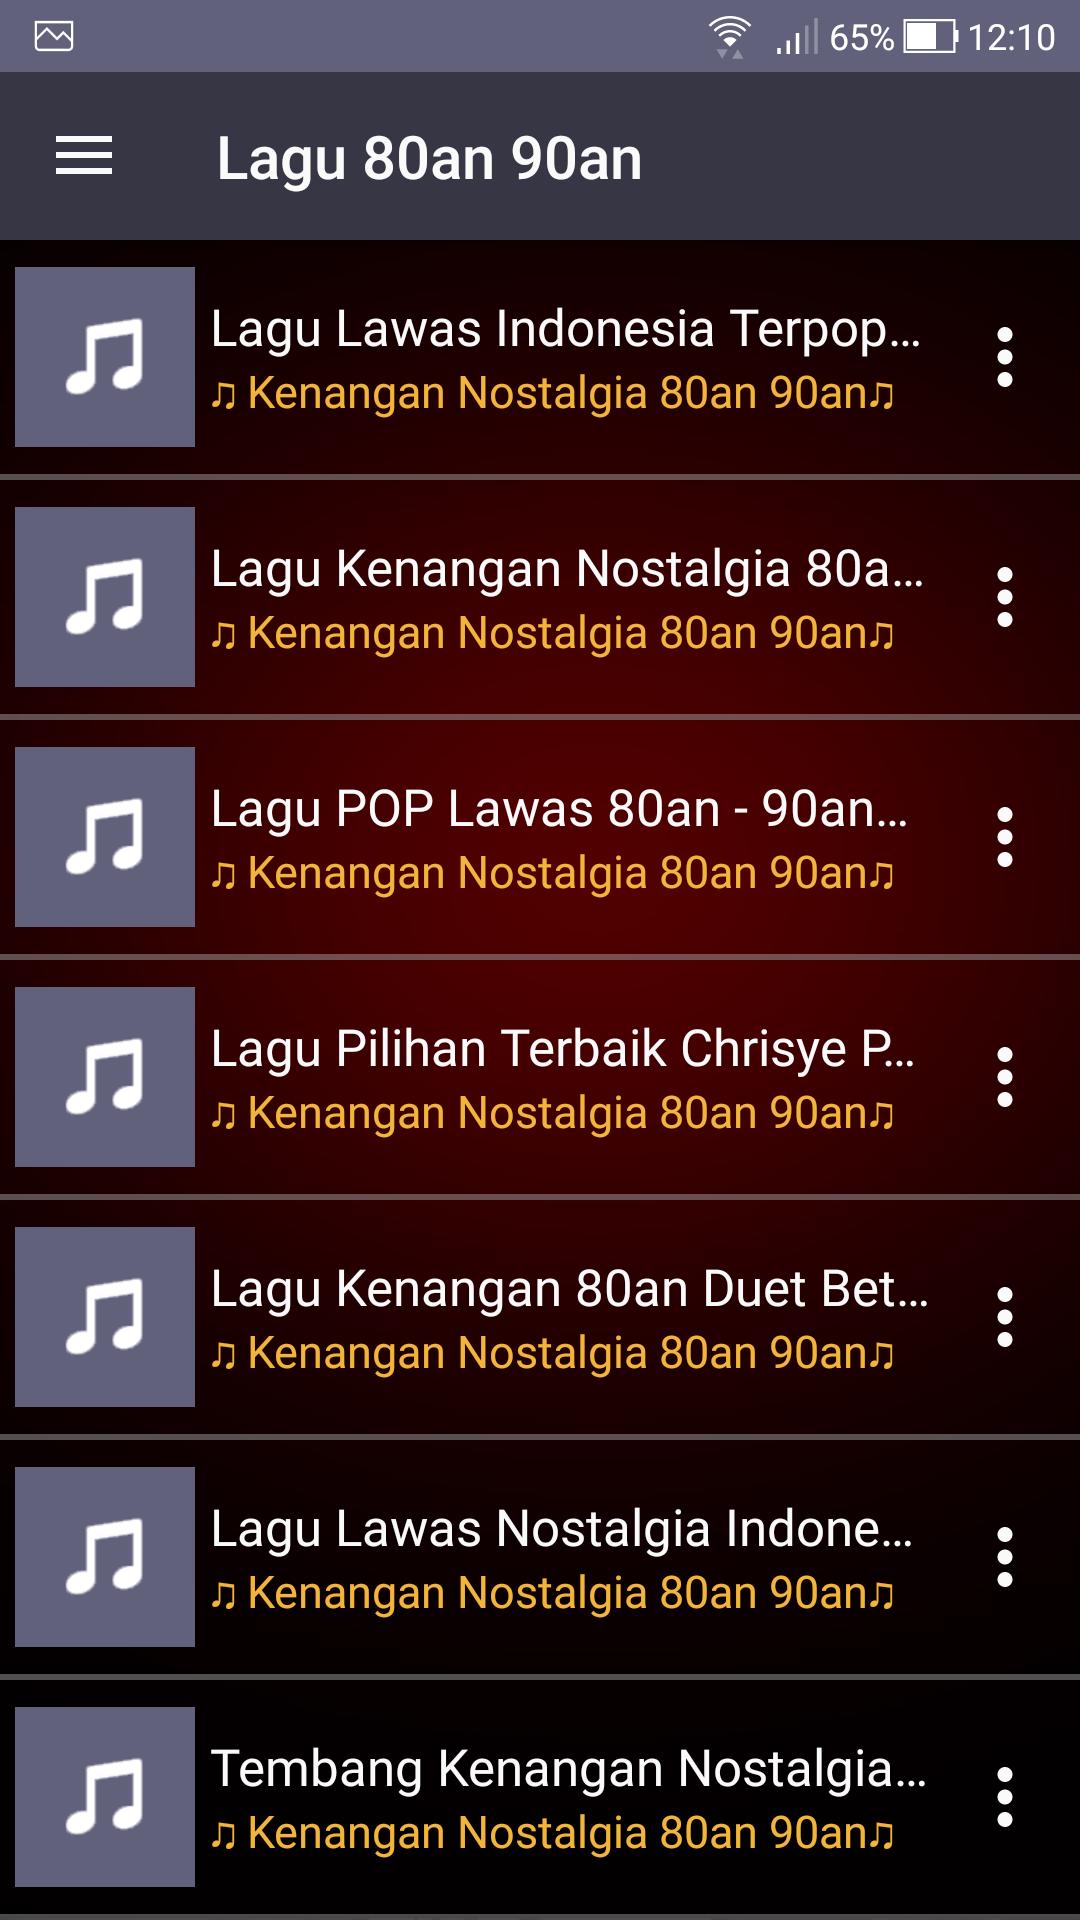 Lagu Terbaru, Gudang Lagu Mp3 Gratis Terbaik for Android - APK Download